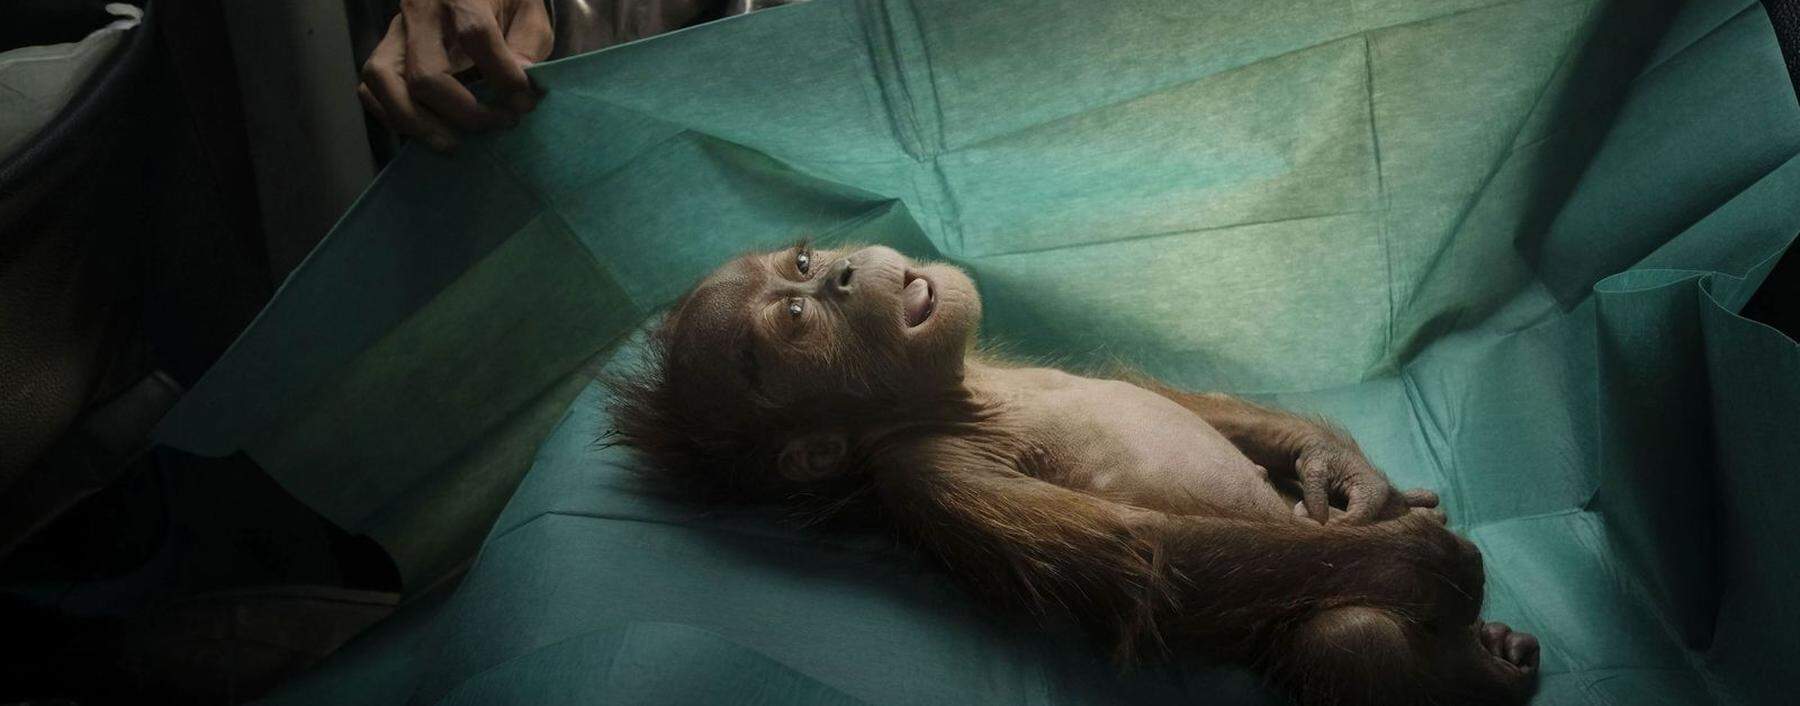 Mit diesem Bild eines verstorbenen Orang-Utan-Babys wurde Schroeder in der Kategorie Natur für das beste Einzelfoto ausgezeichnet.  